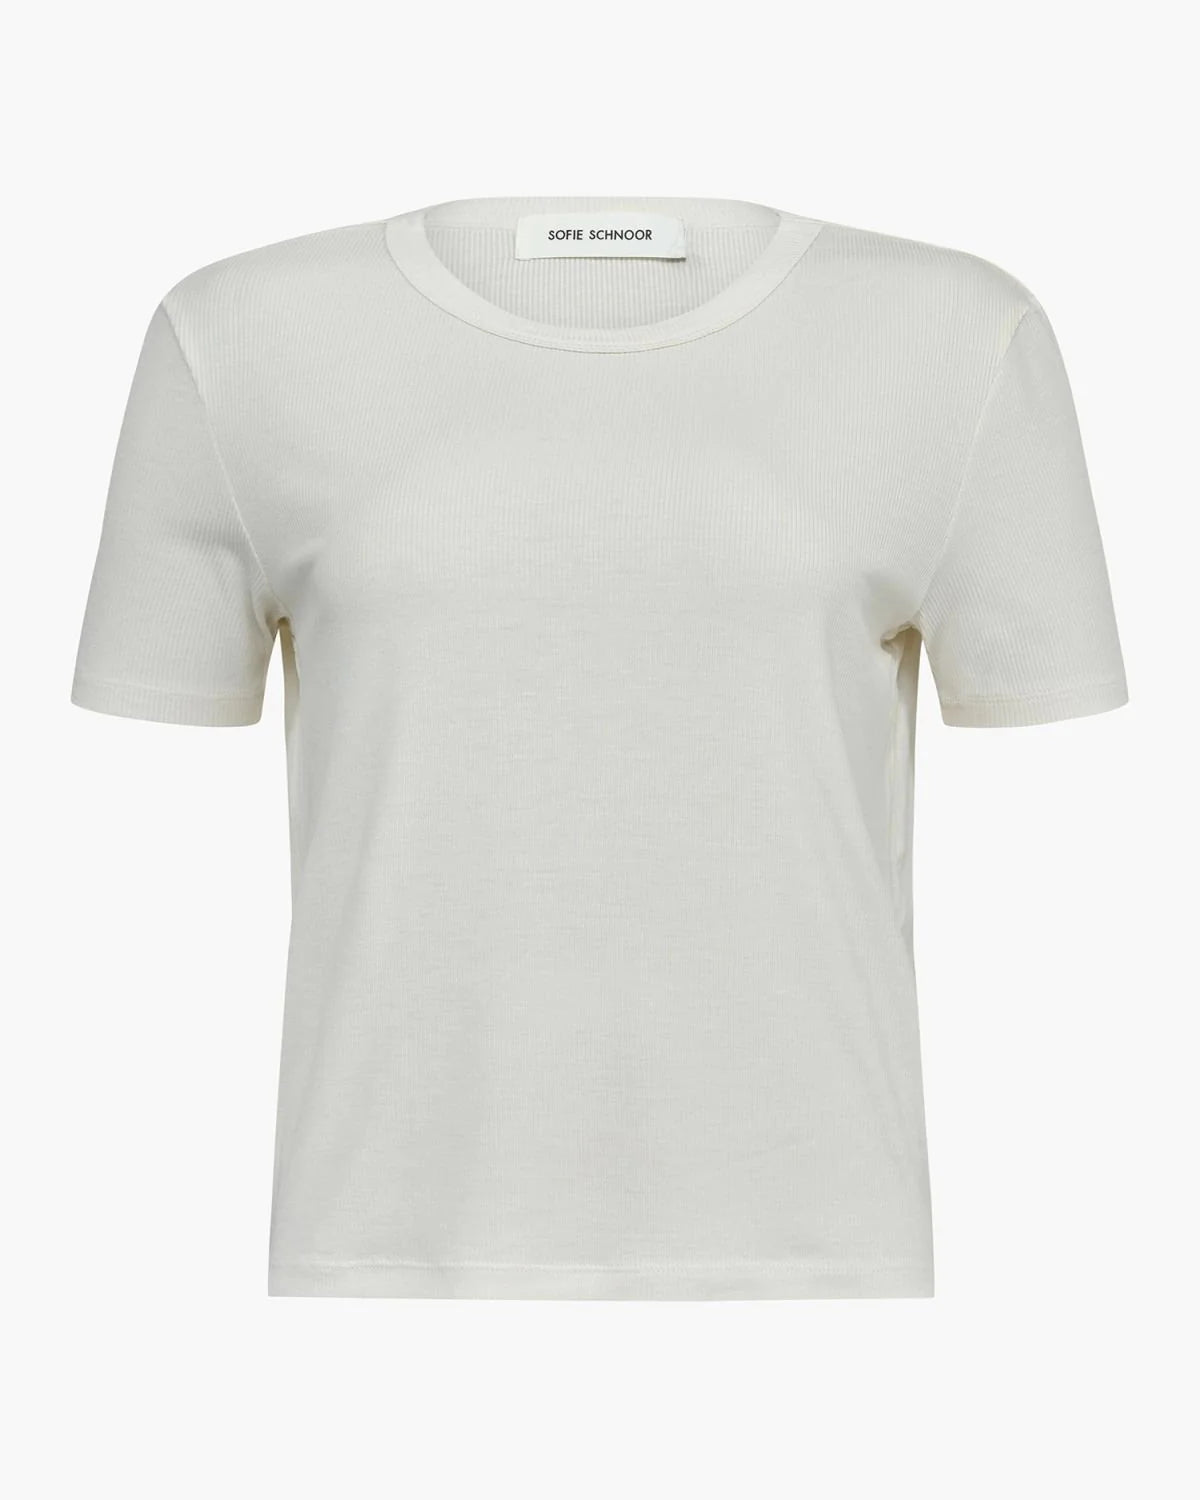 Sofie Schnoor T-Shirt White